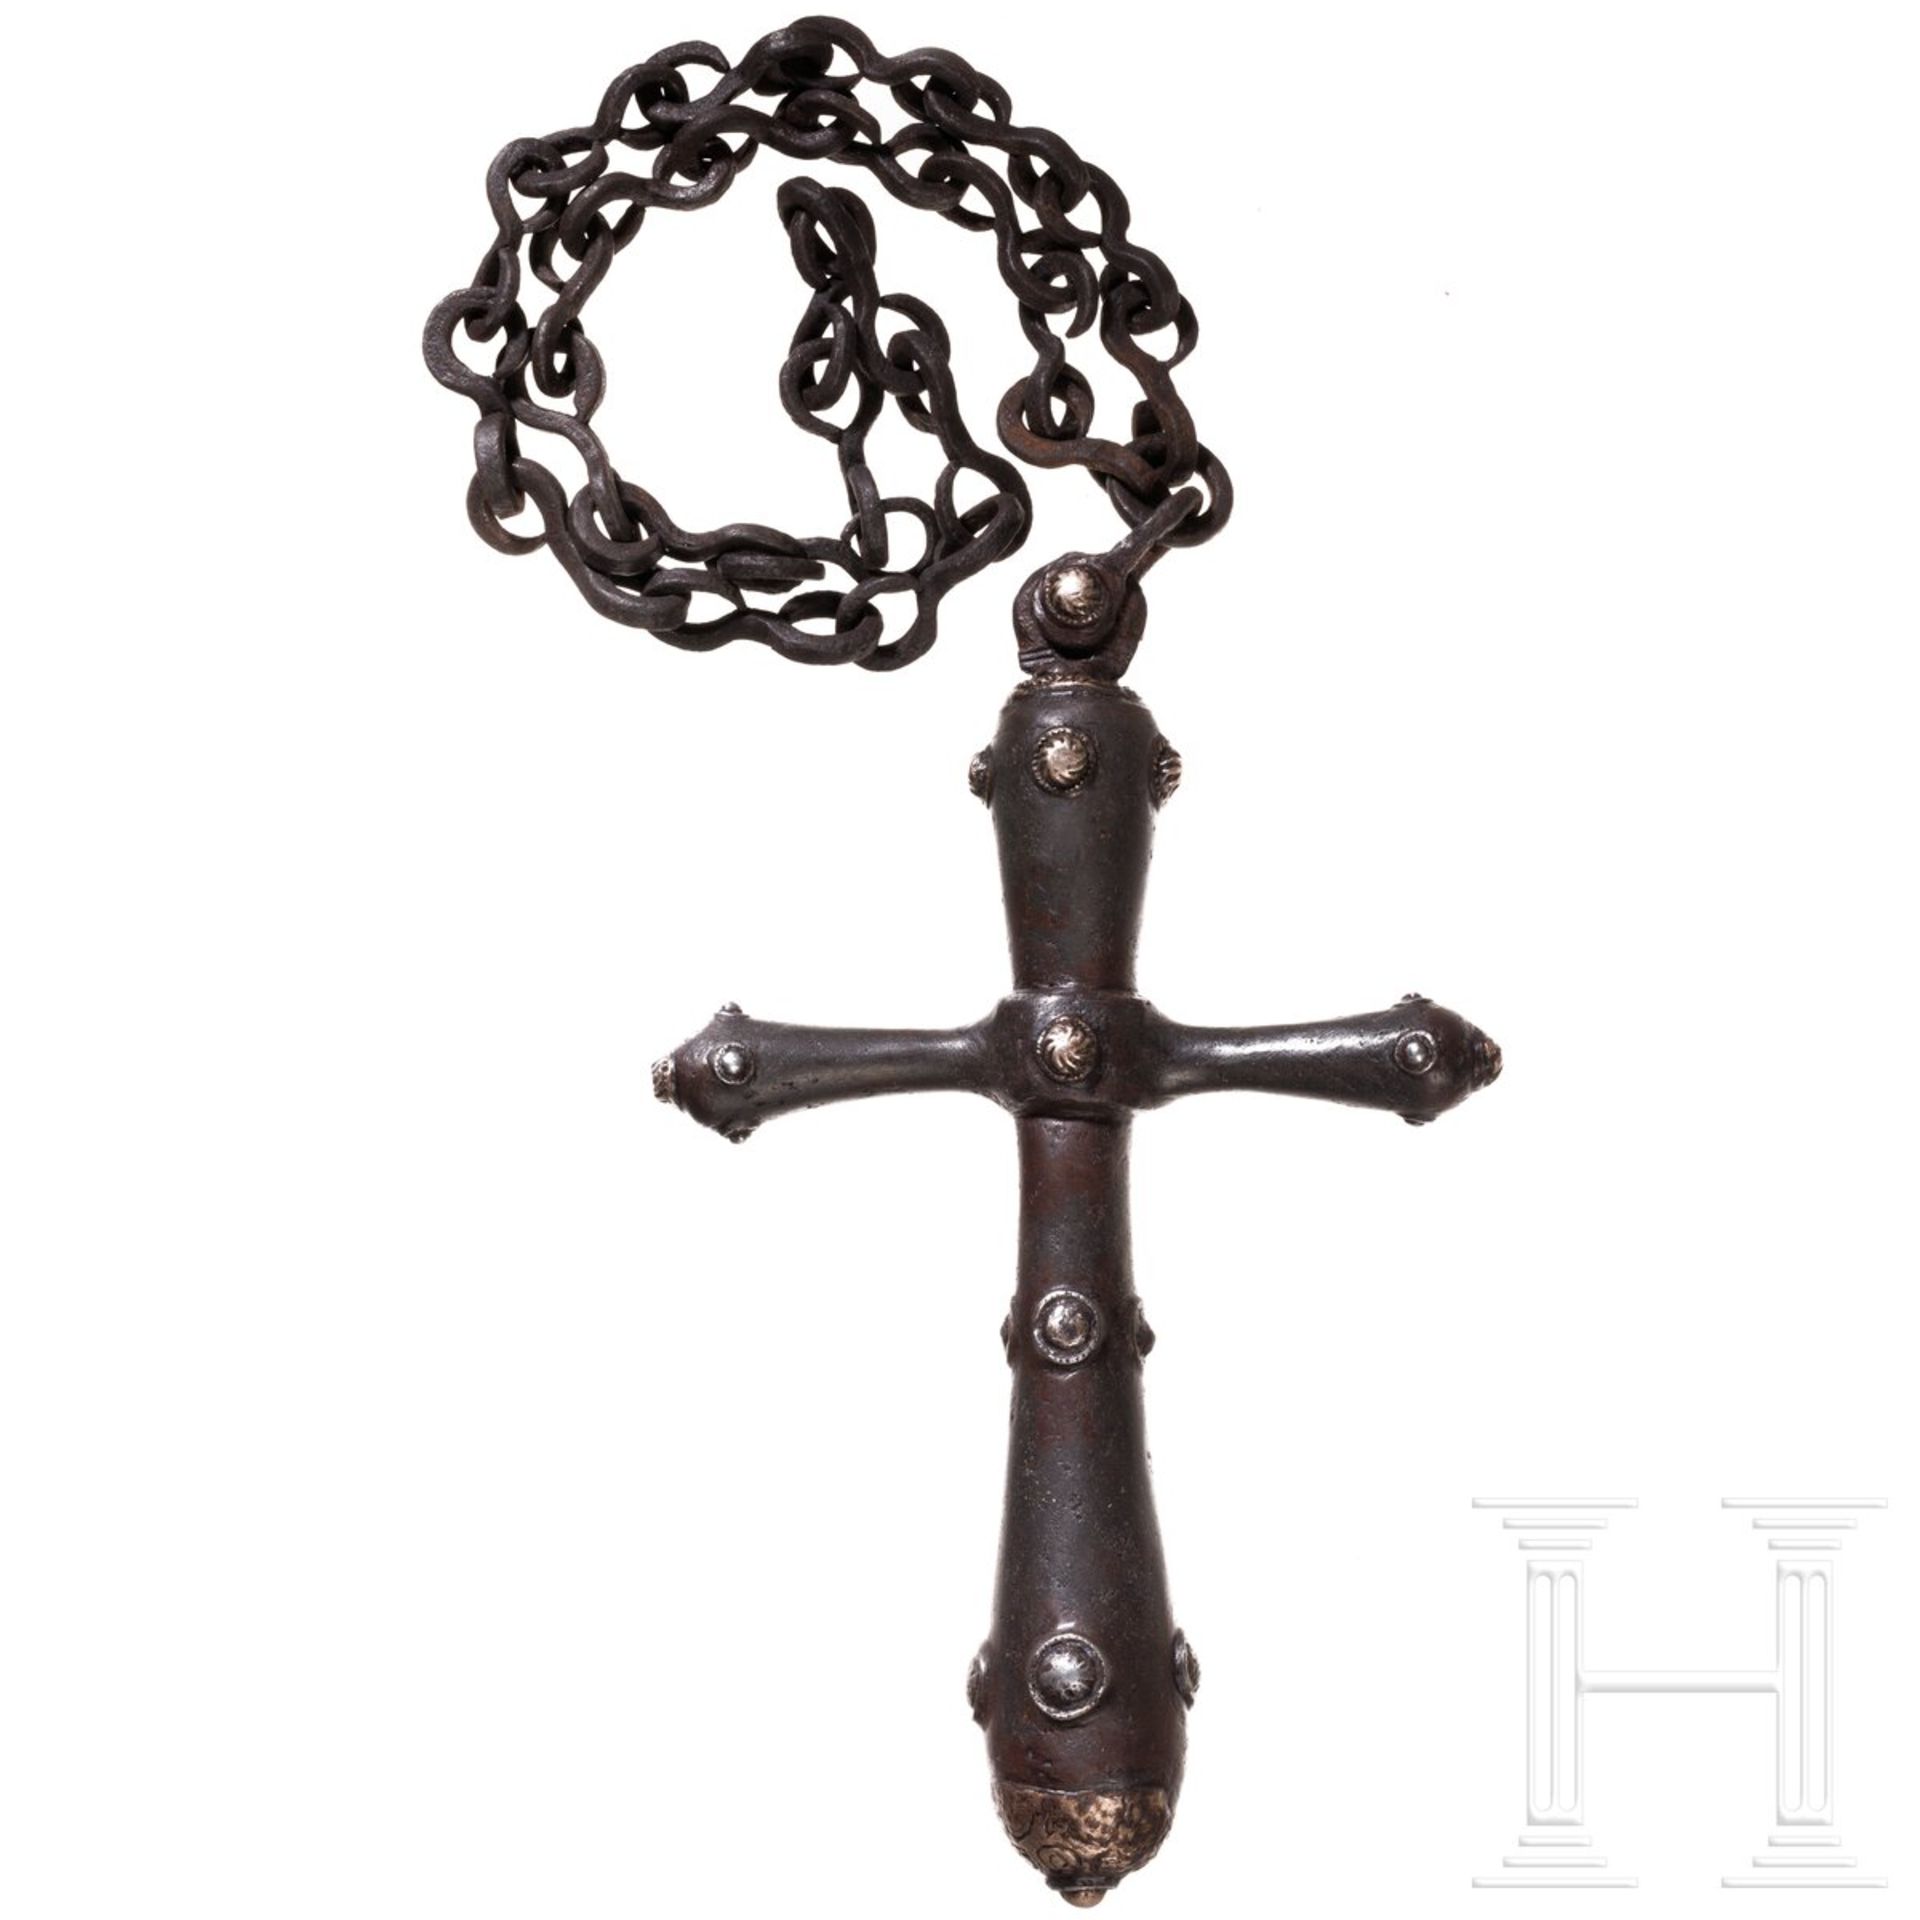 Frühneuzeitliches Kreuz aus Eisen mit silbernen Beschlägen, Südosteuropa, 17. Jhdt. - Image 2 of 2